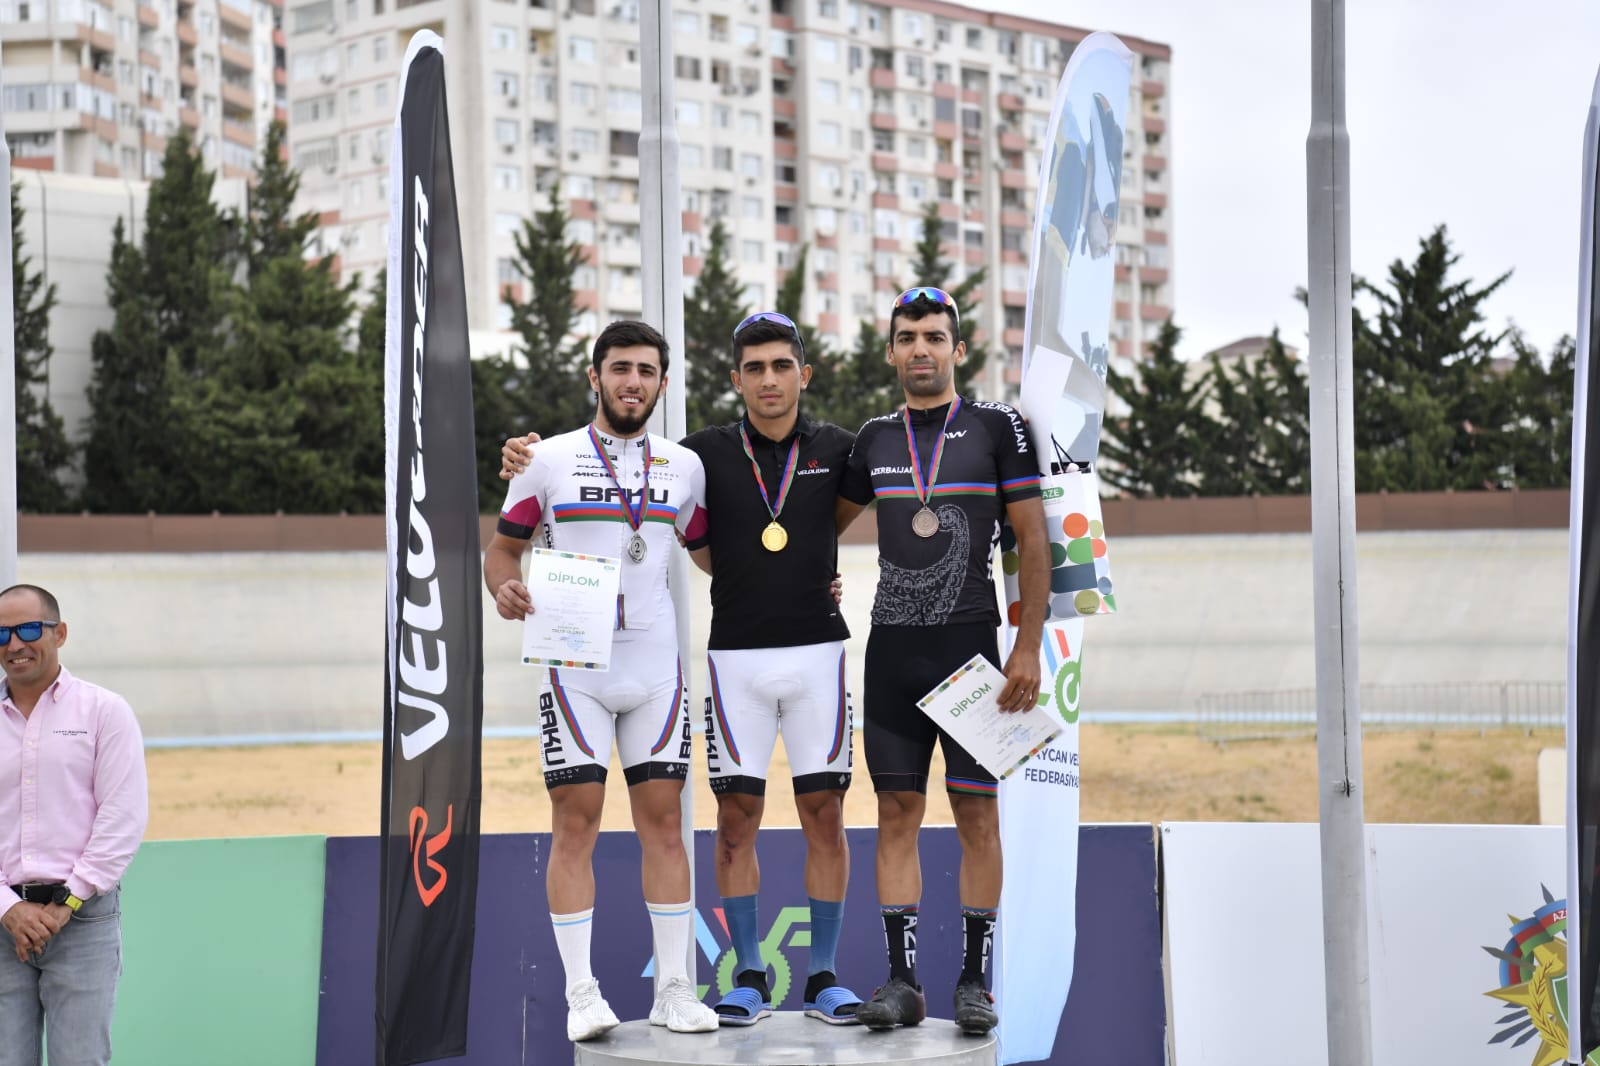 Trek velosipedi üzrə Azərbaycan çempionatı başa çatıb